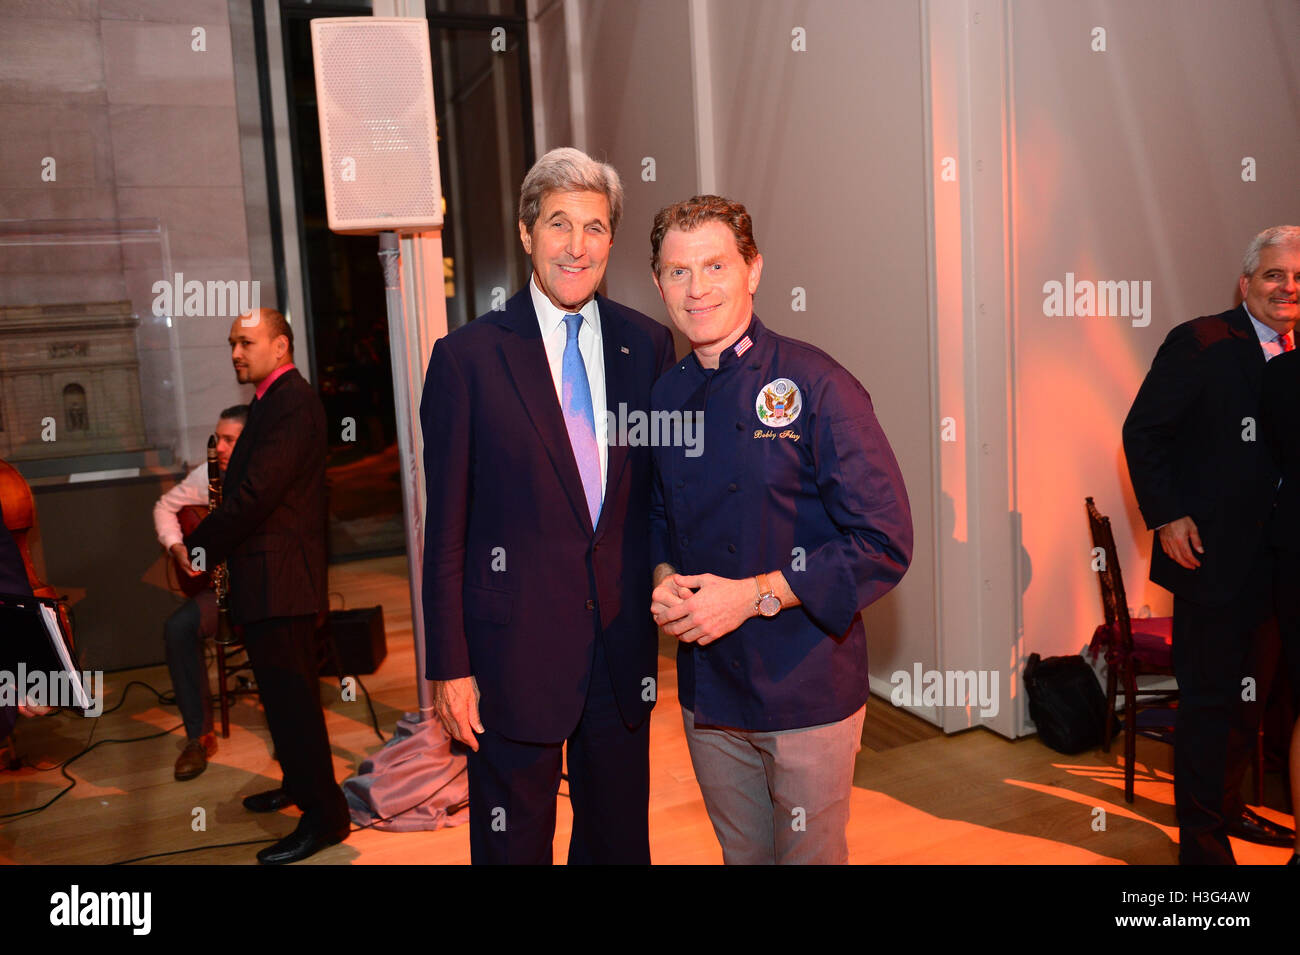 Le secrétaire d'Etat John Kerry pose pour une photo avec le célèbre chef Bobby Flay au dîner transatlantique à la Morgan Library à New York City, New York le 22 septembre 2016. Banque D'Images